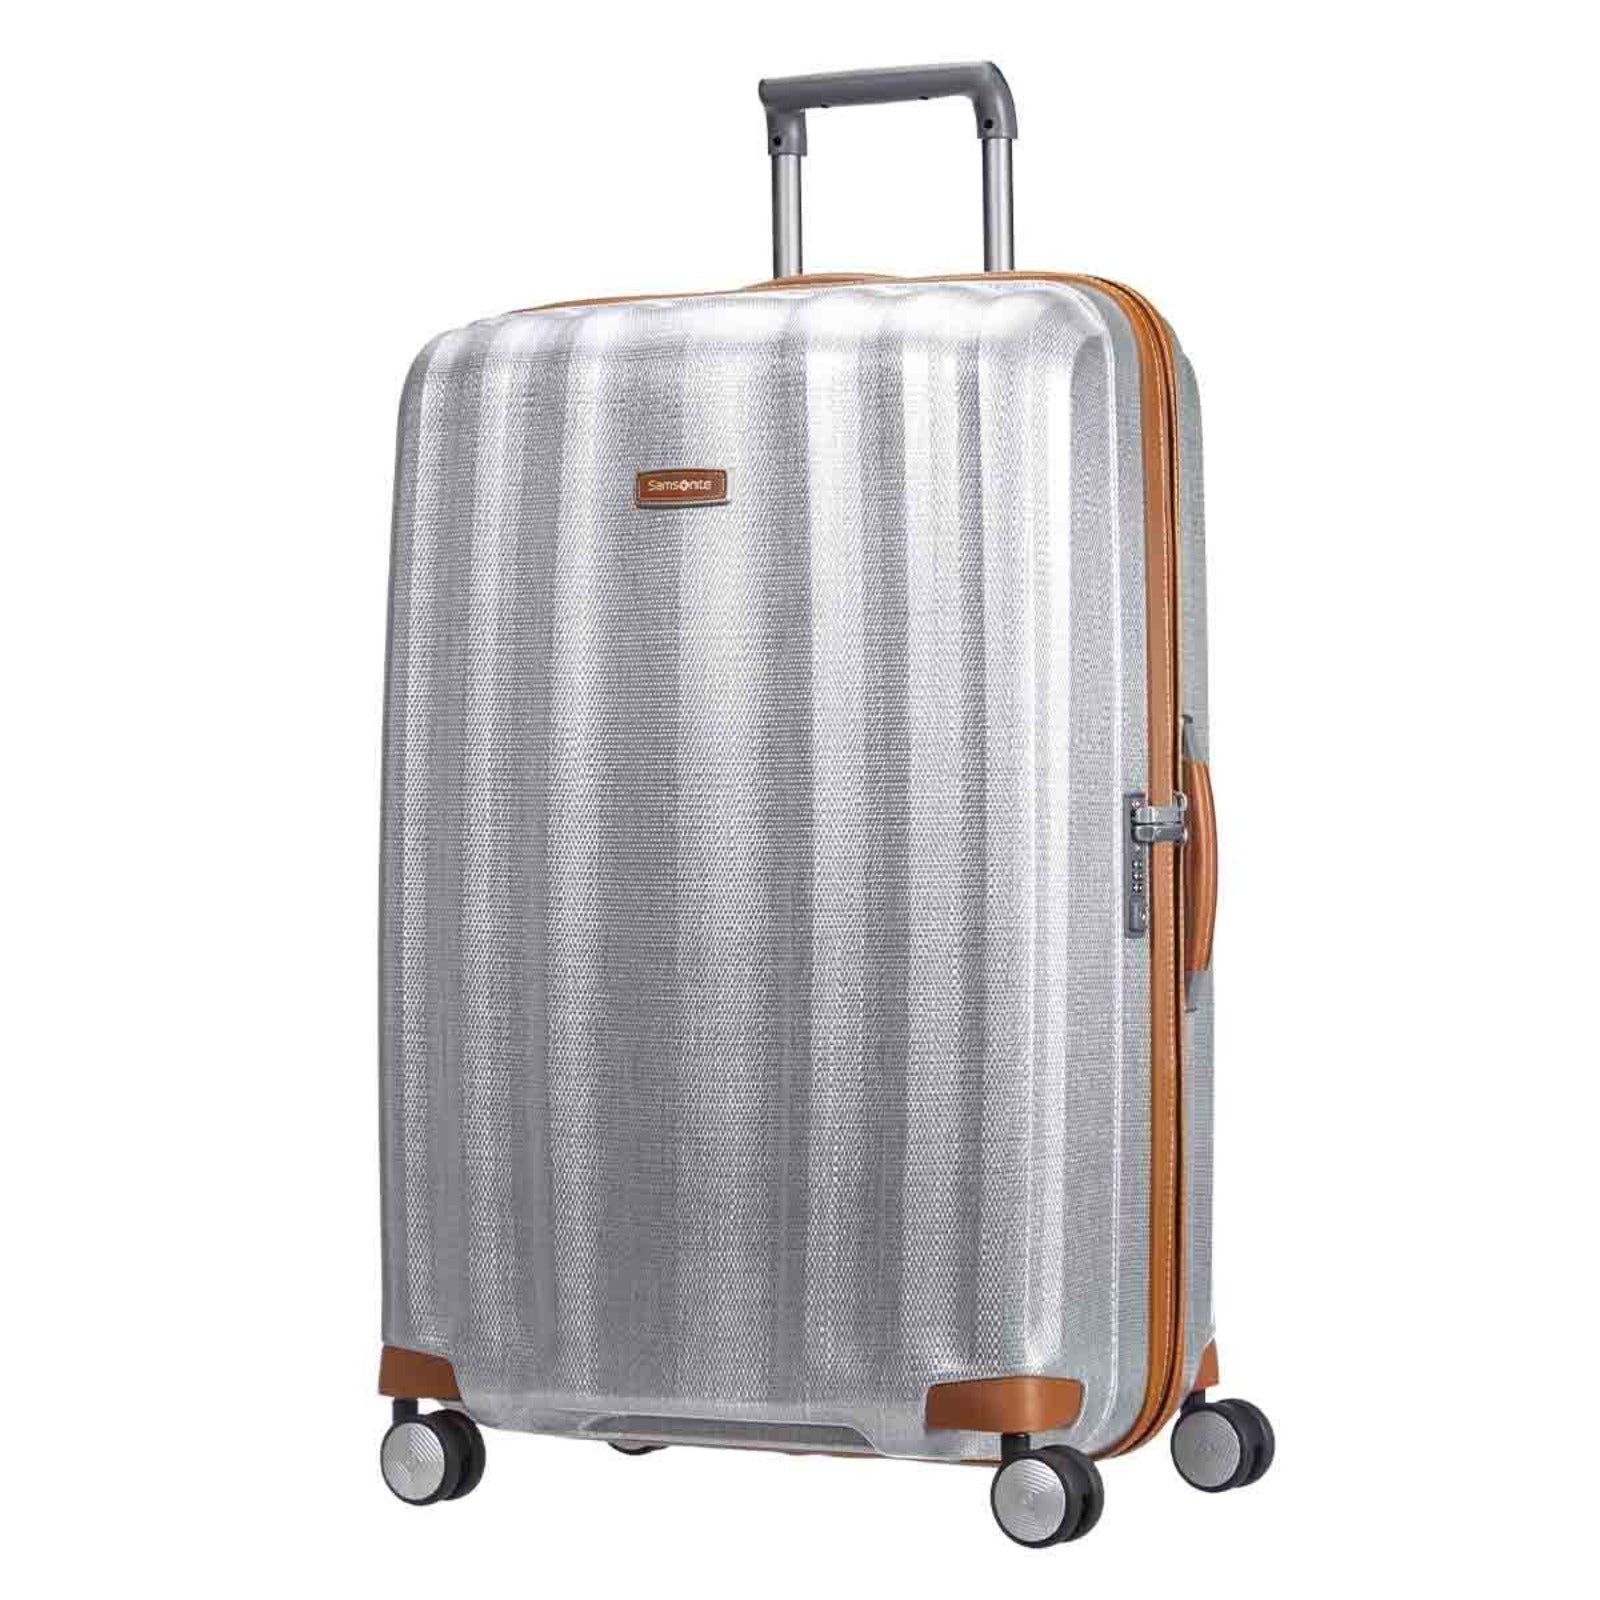 Samsonite_Lite-Cube_Deluxe_82cm_Suitcase_Aluminium_Front.